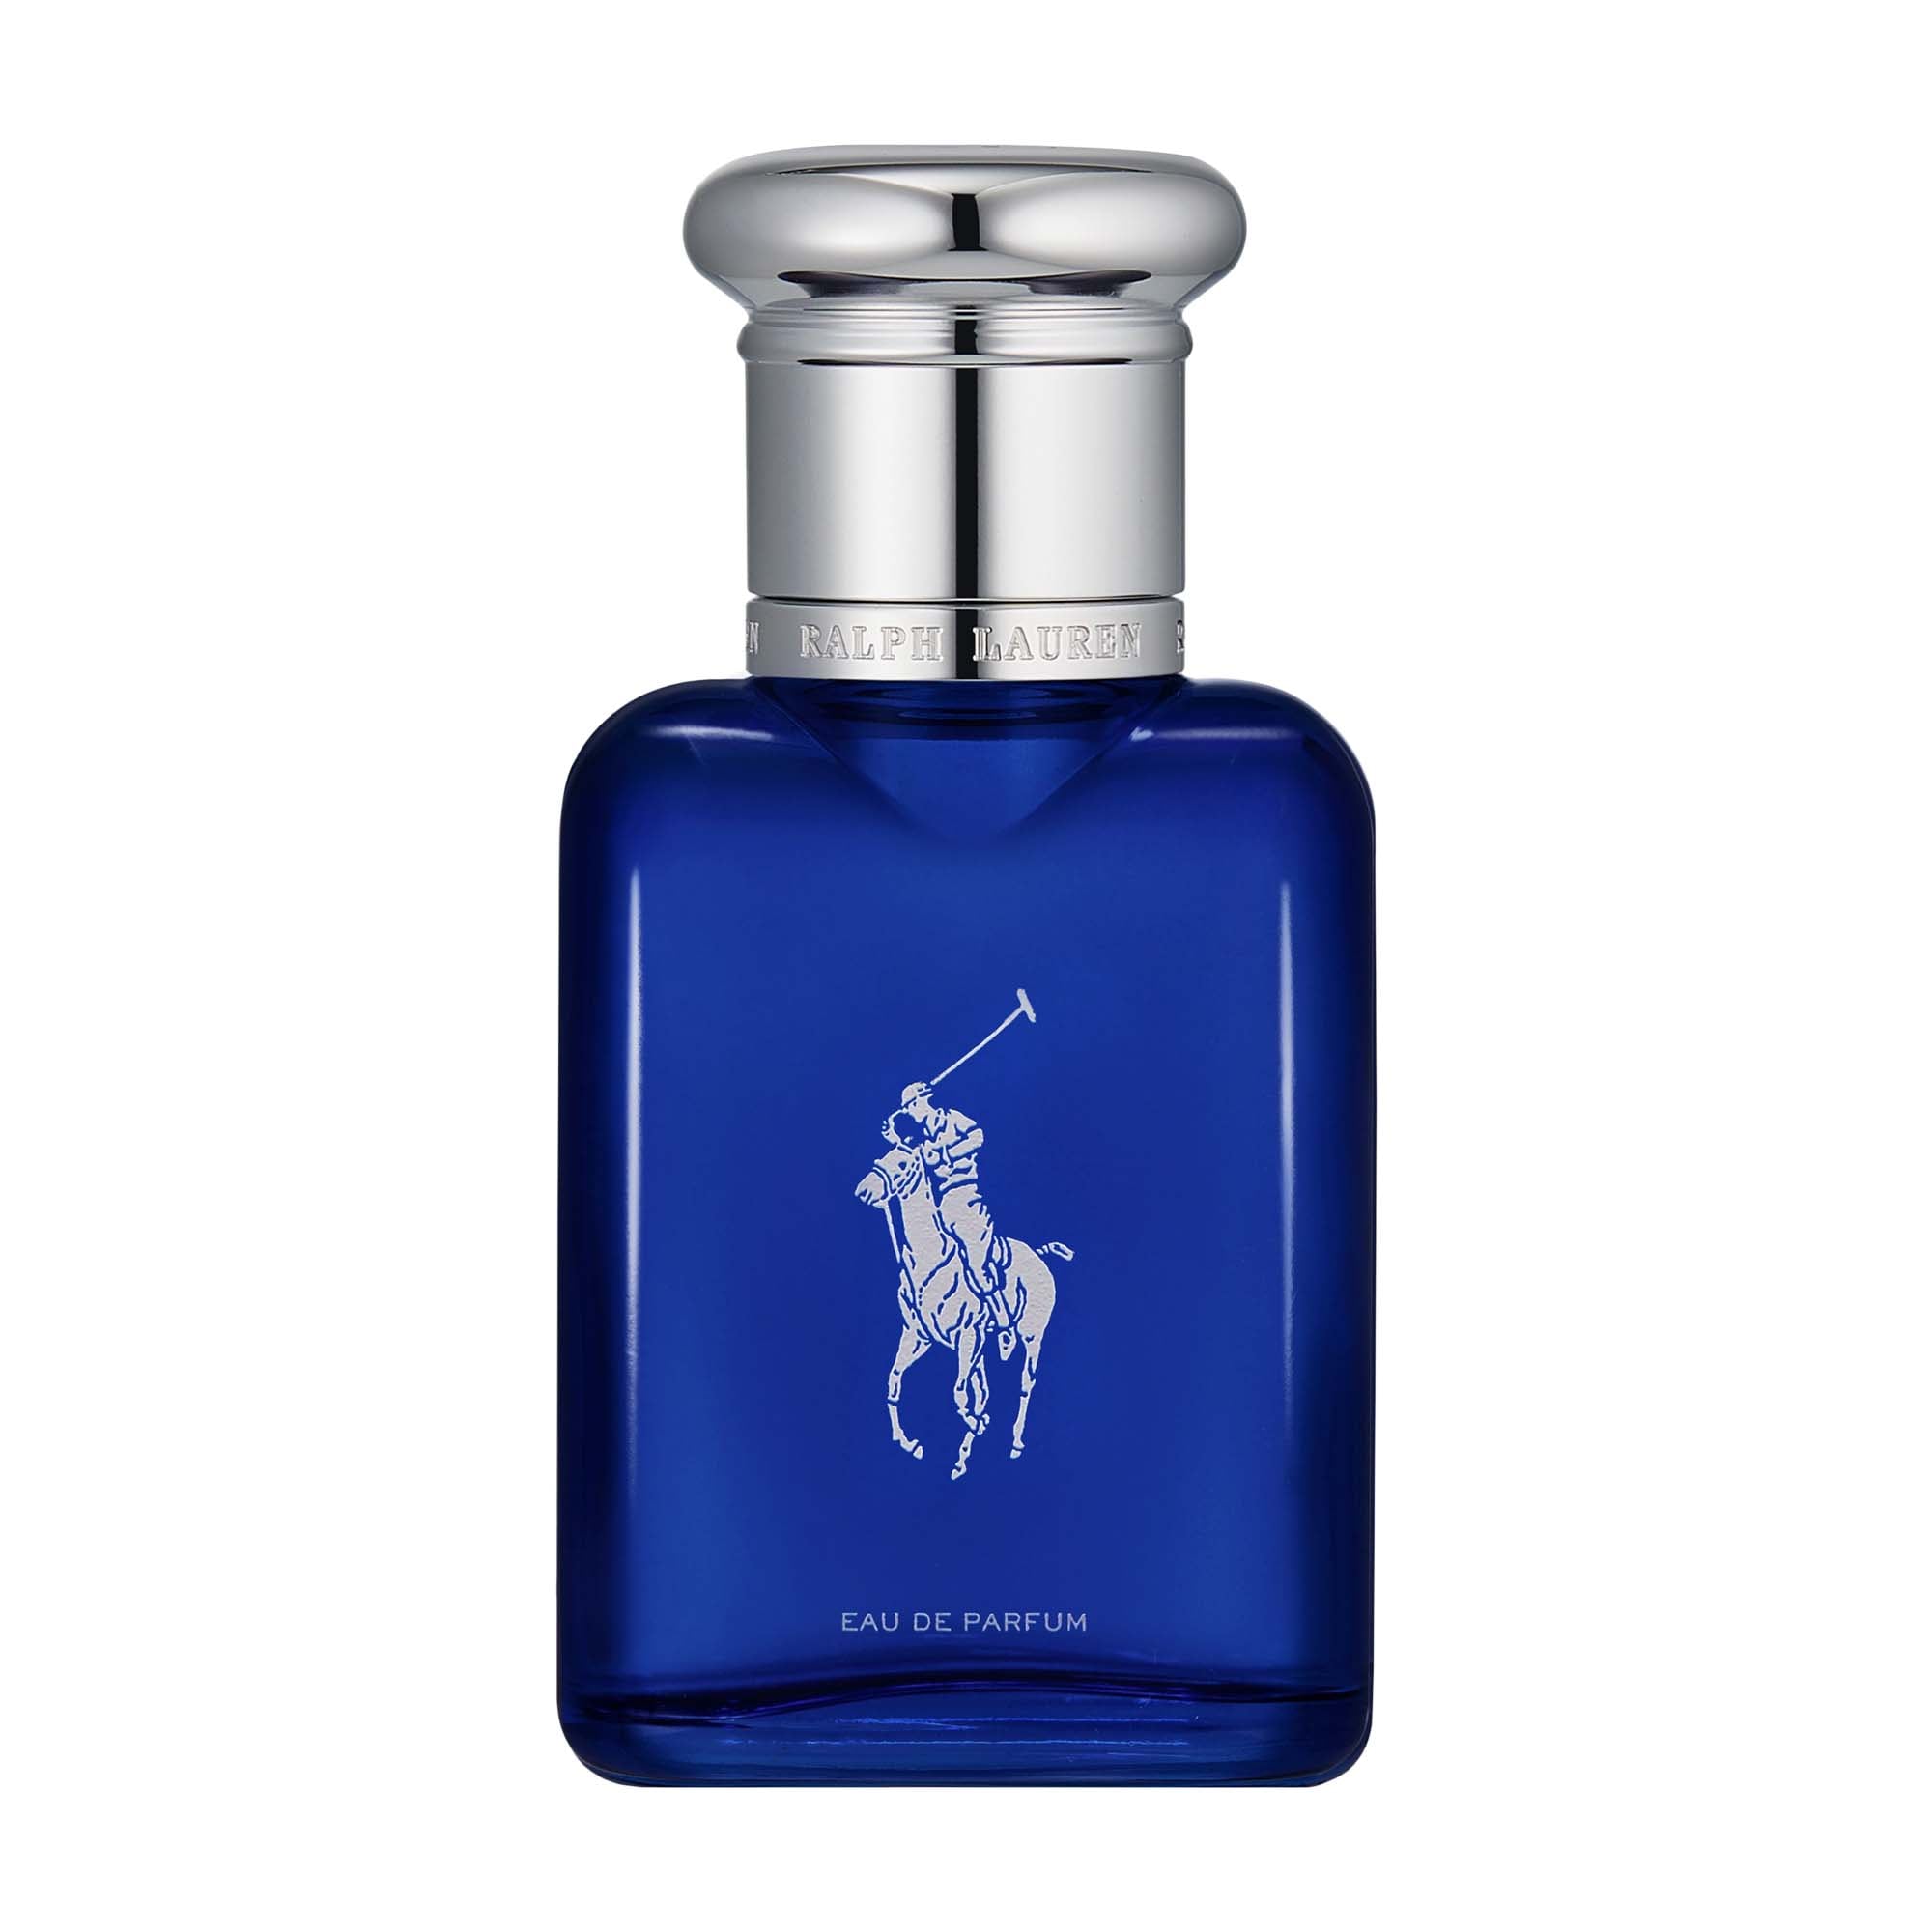 Polo Blue Eau de Parfum Ralph Lauren